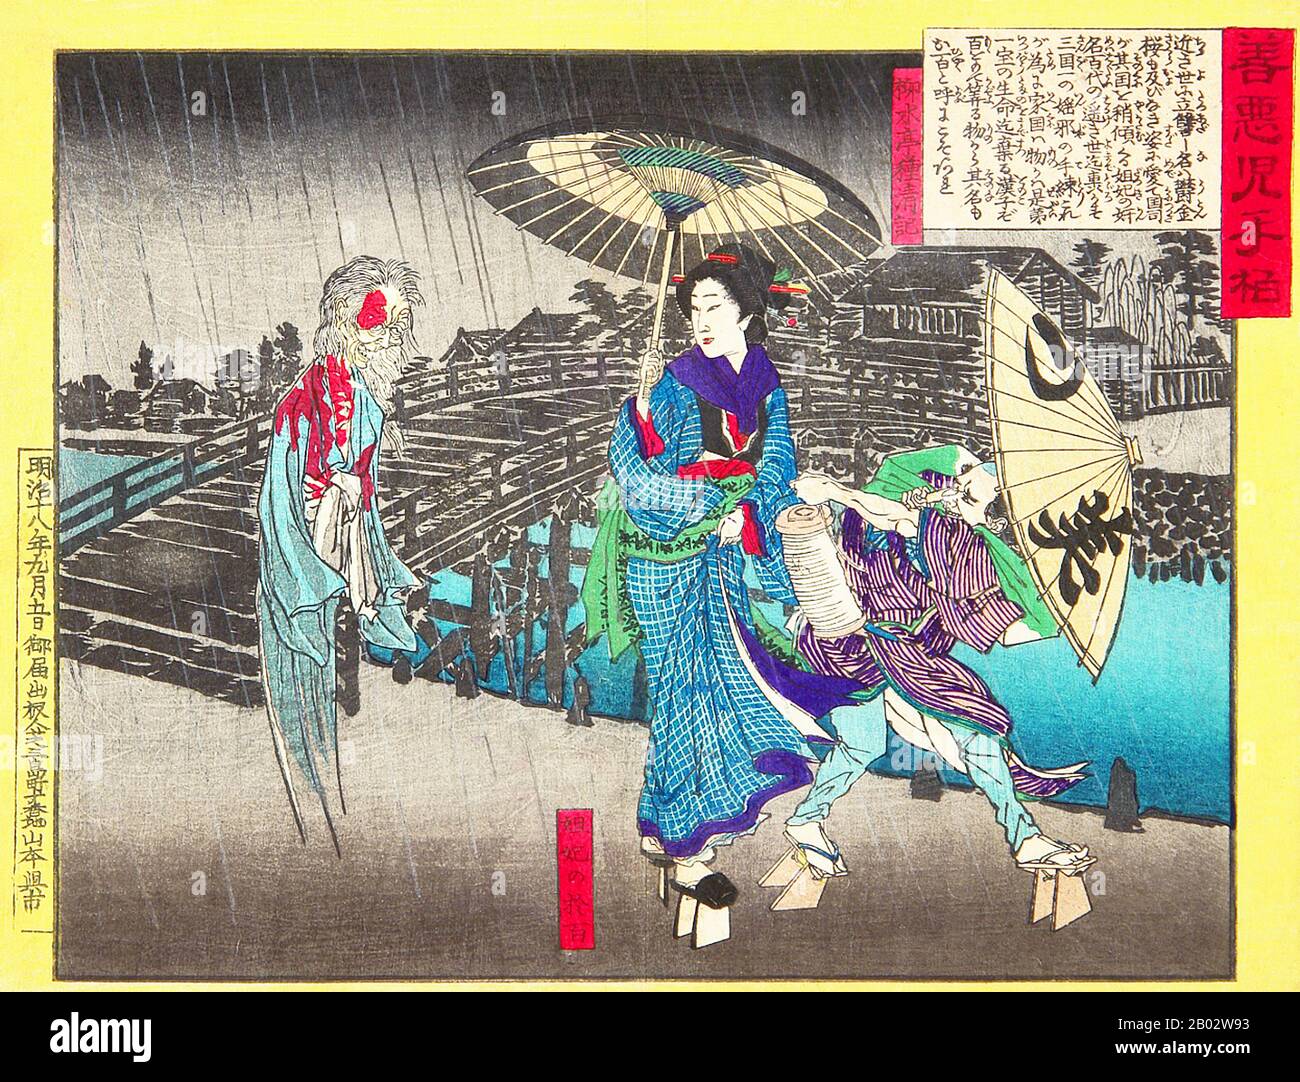 Adachi Ginkō war ein japanischer Künstler, der vor allem für seine Drucke im Ukiyo-e-Stil als Mitglied der Utagawa-Schule bekannt ist. Er arbeitete in einer Vielzahl von Genres, darunter Porträts von Schönheiten und Schauspielern, Landschaften, Buchillustrationen und satirische Werke, und produzierte eine große Anzahl von Triptychen zeitgenössischer Ereignisse. Sein erfolgreichsten Werk war sein Bildlicher Abriss der japanischen Historienserie der Triptychen in den späten 1880er Jahren. Wegen Karikaturierung von Kaiser Meiji wurde er im Jahr 1889 inhaftiert und mit einer Geldstrafe belegt. Ginkō arbeitete auch unter den Kunstnamen Shōsetsusai, Shinshō und Shōsai. Stockfoto